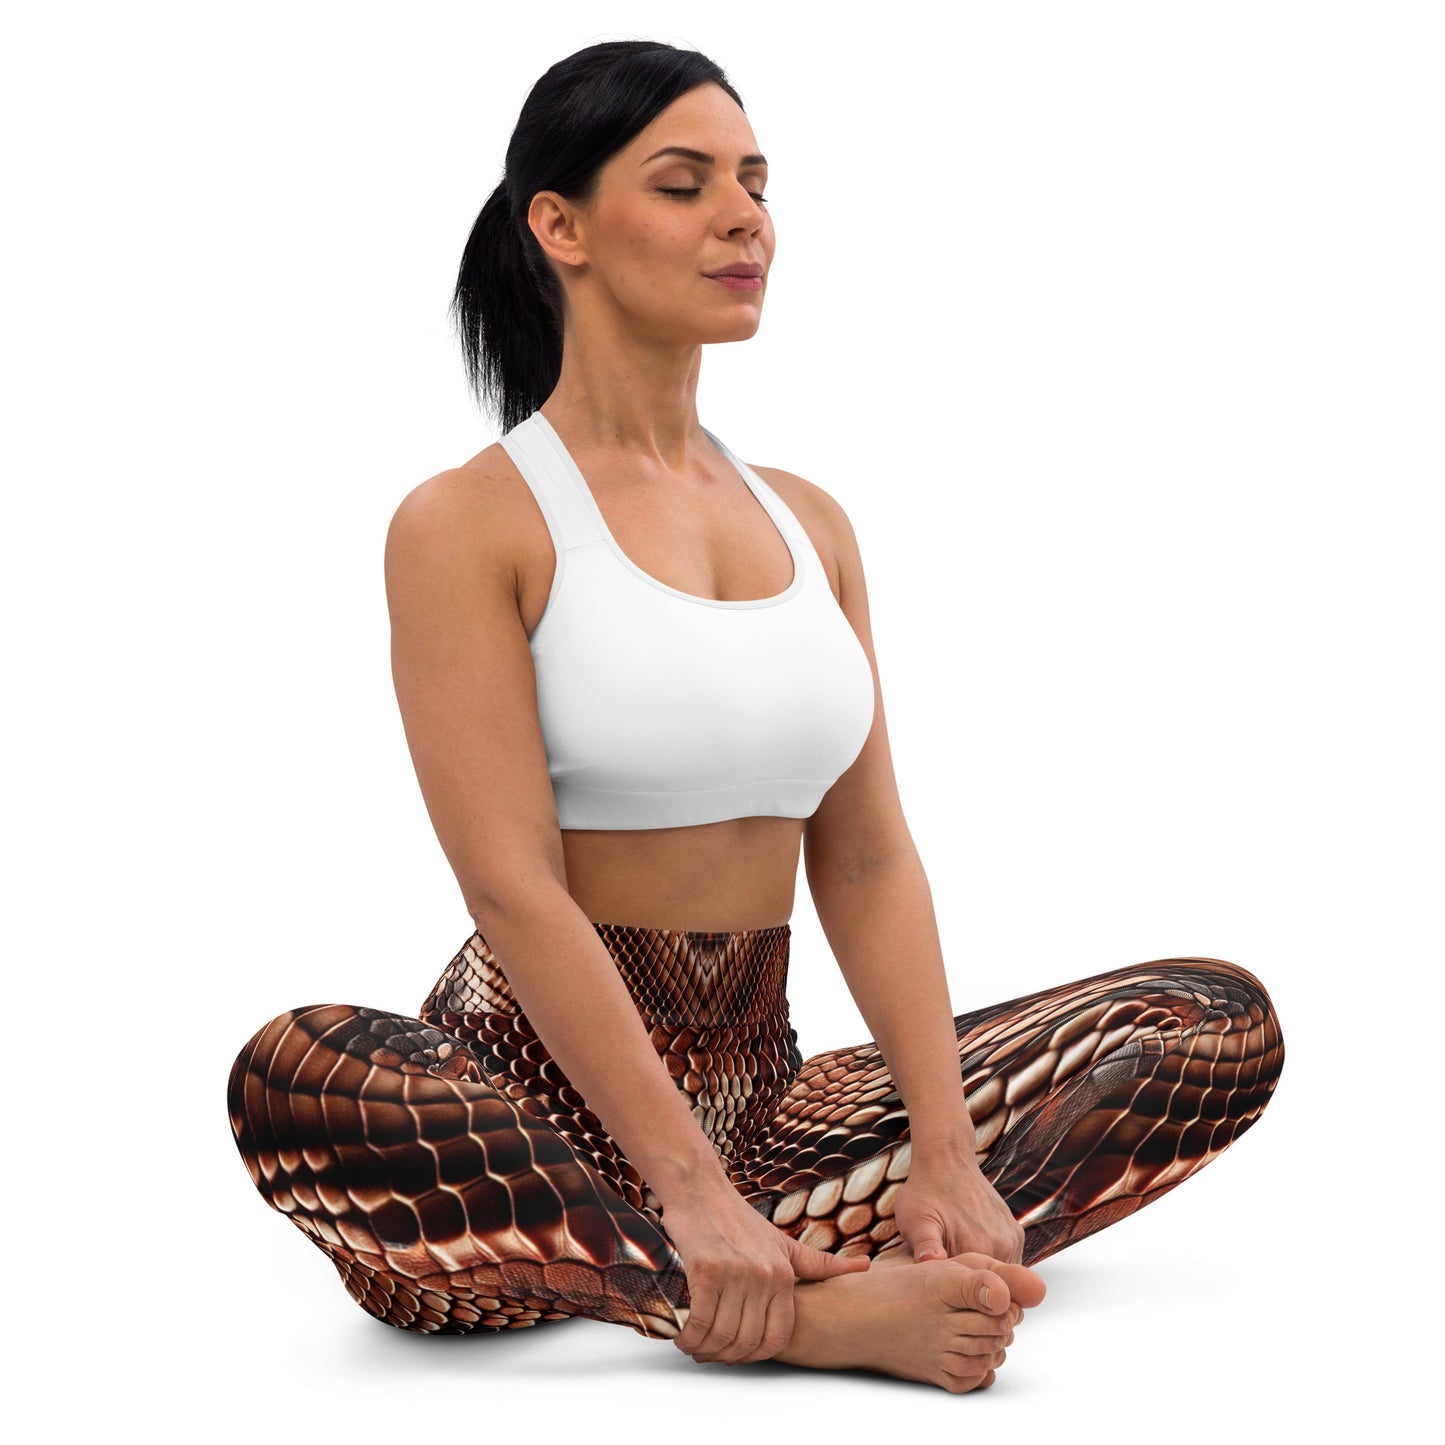 Copperhead Snake Print Yoga Leggings For Women